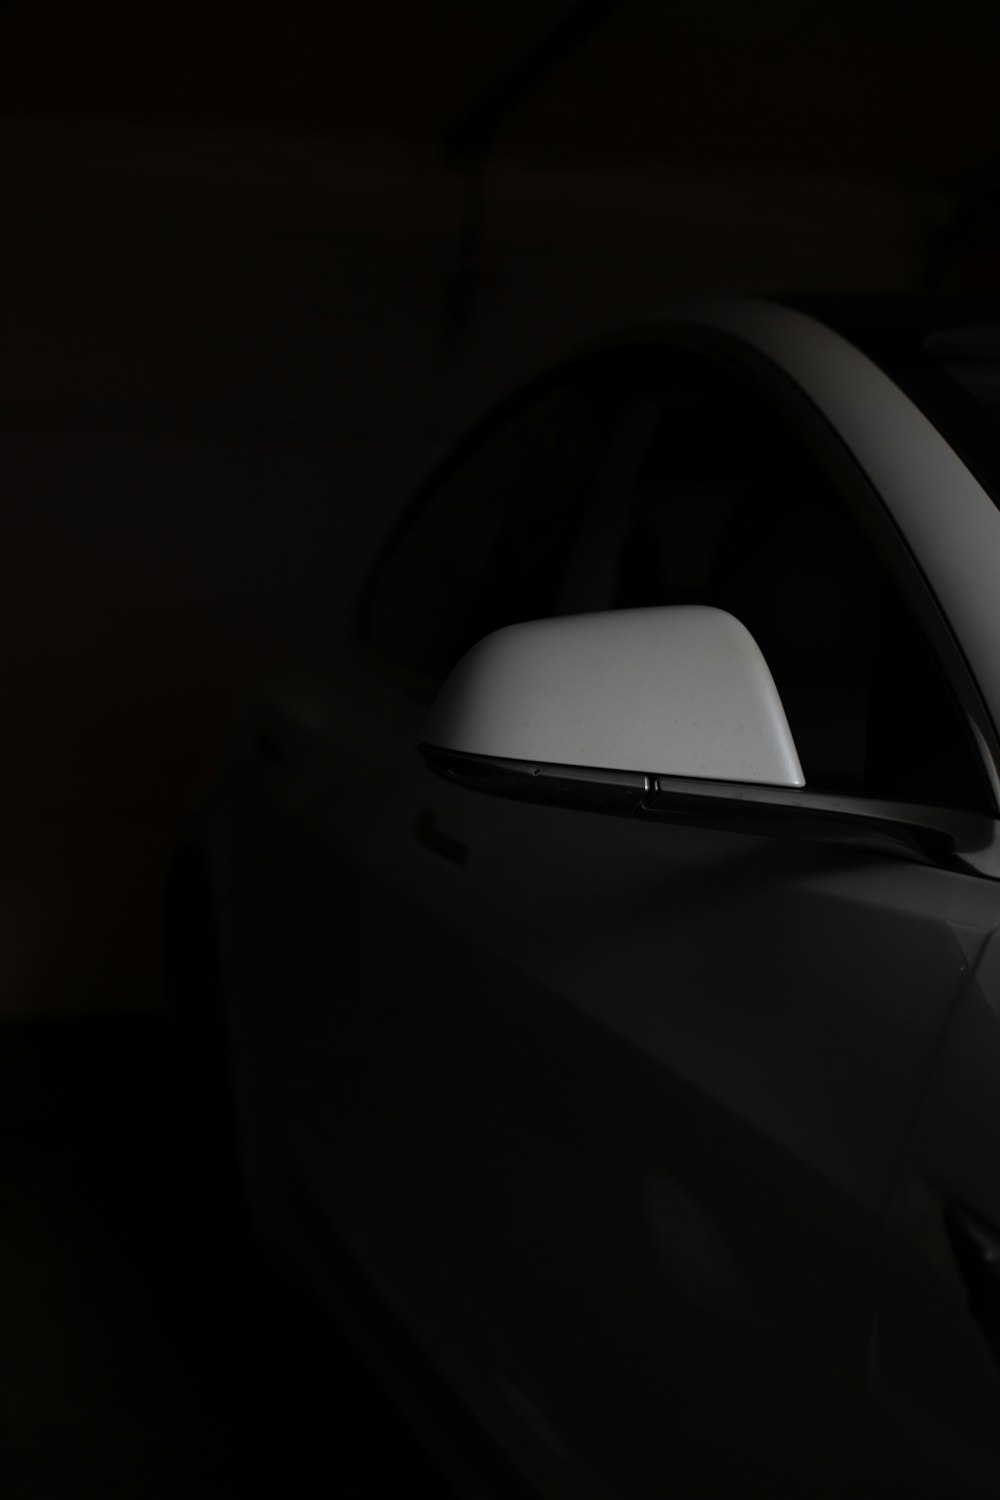 Una foto en blanco y negro de un coche en la oscuridad